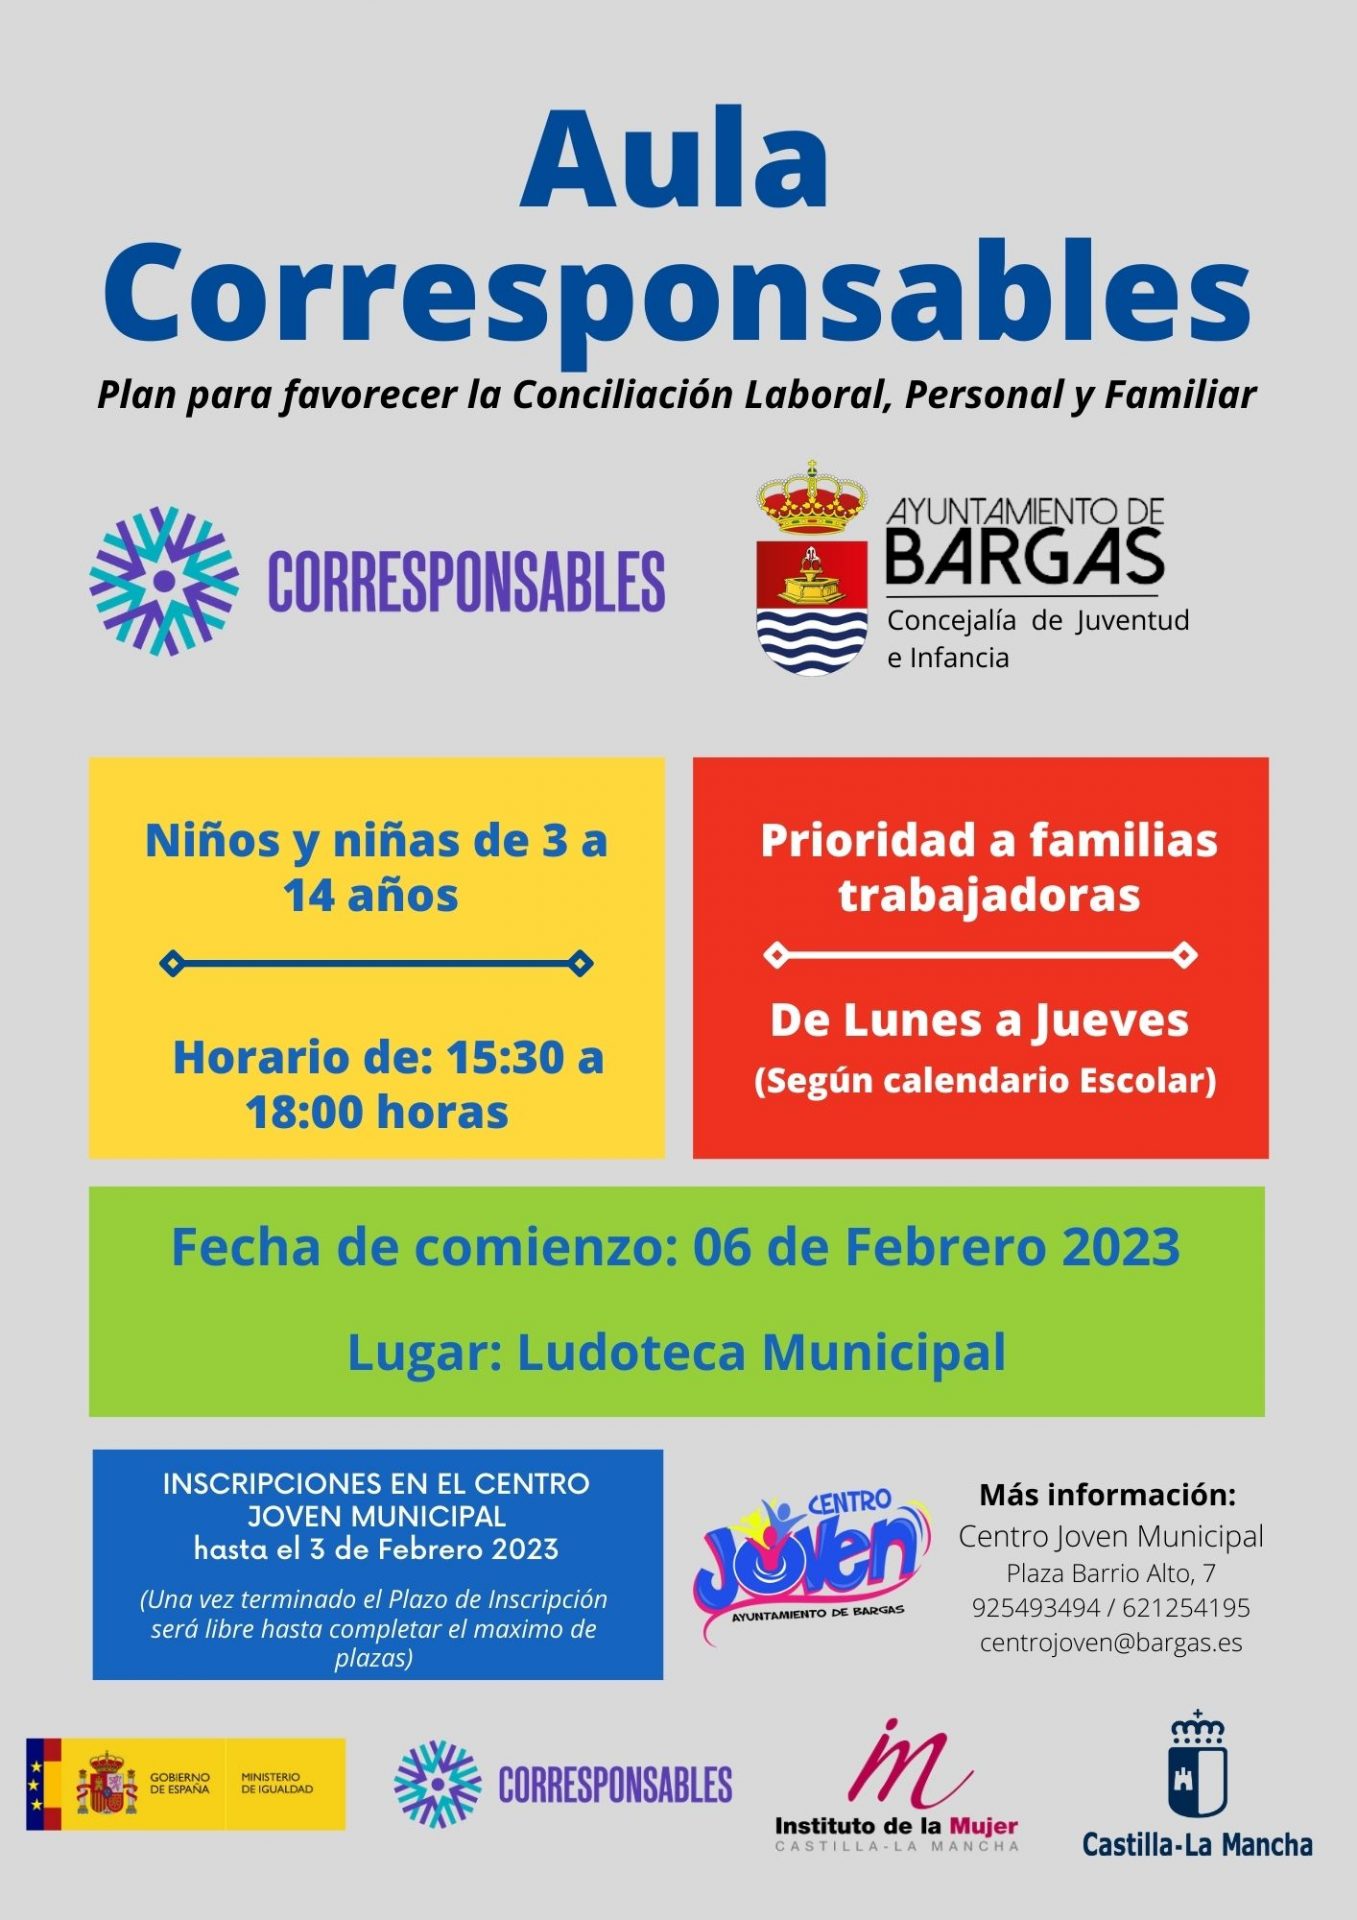 Aula Corresponsables – Bargas 2023